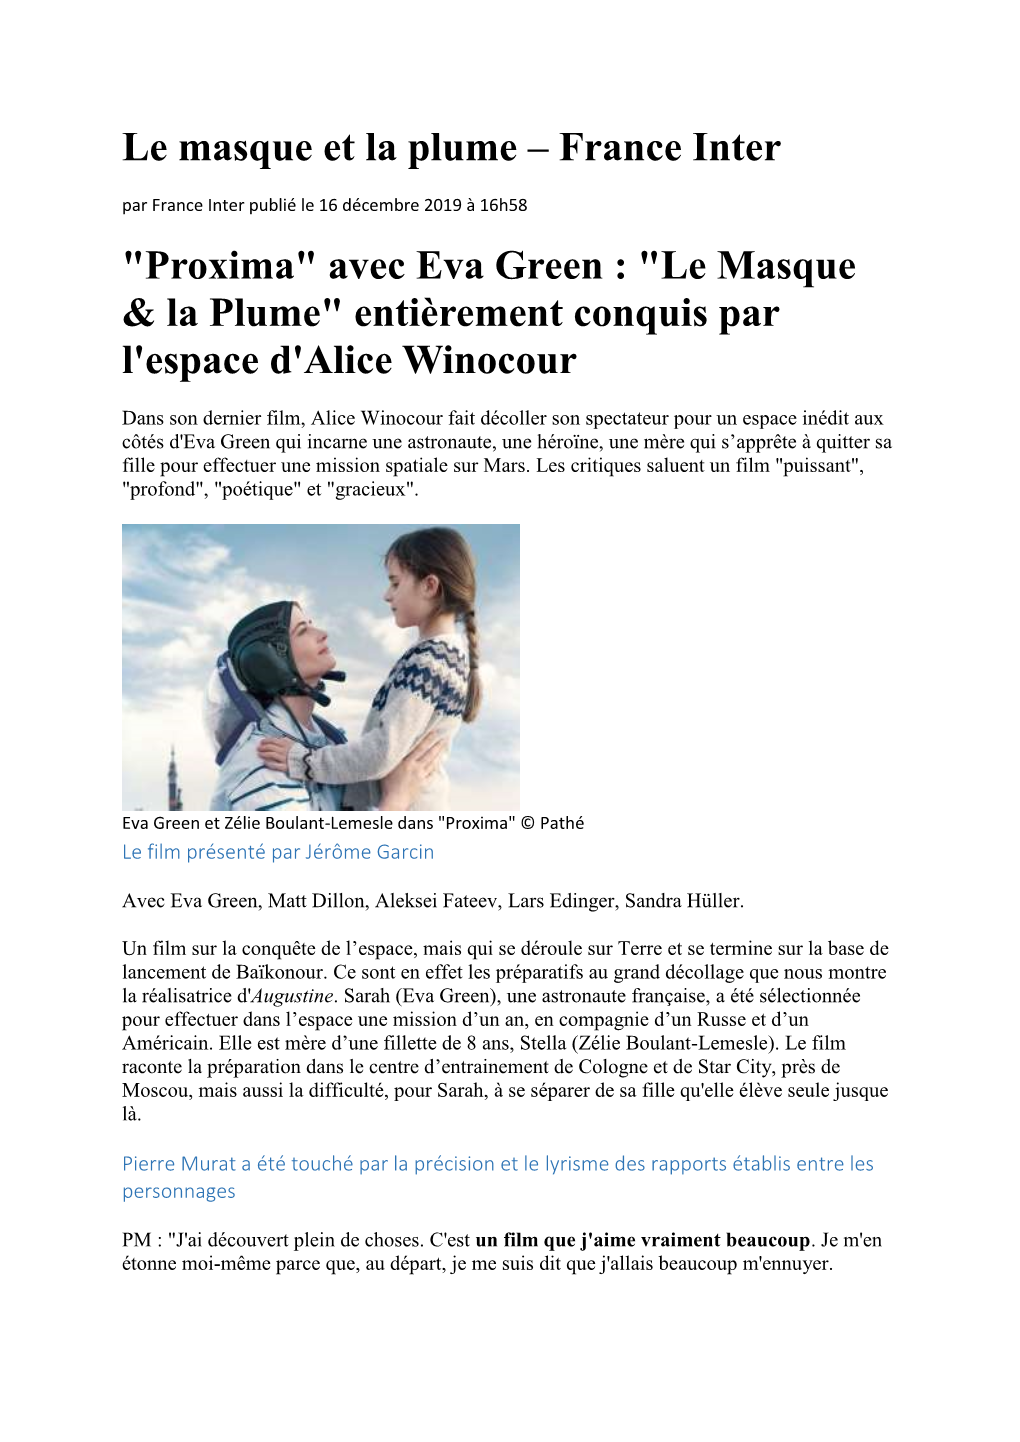 Le Masque Et La Plume – France Inter "Proxima" Avec Eva Green : "Le